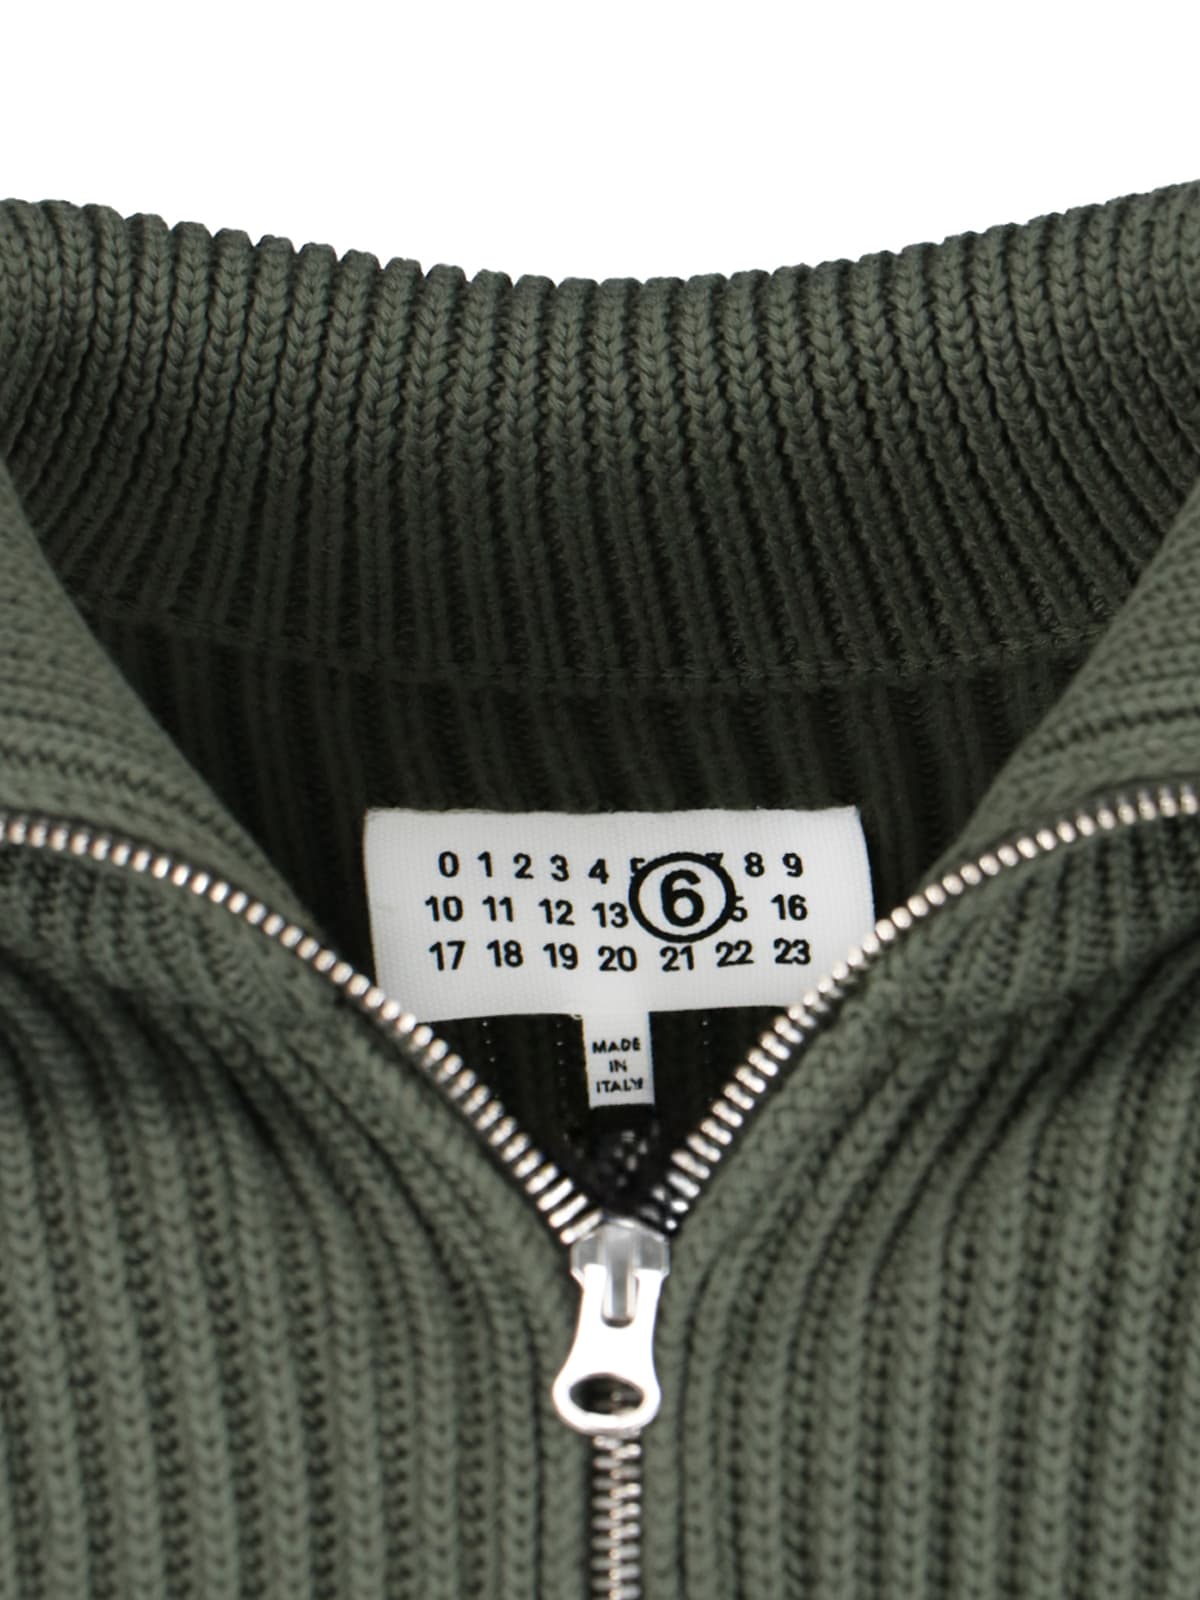 Shop Mm6 Maison Margiela Zip Sweater In Green